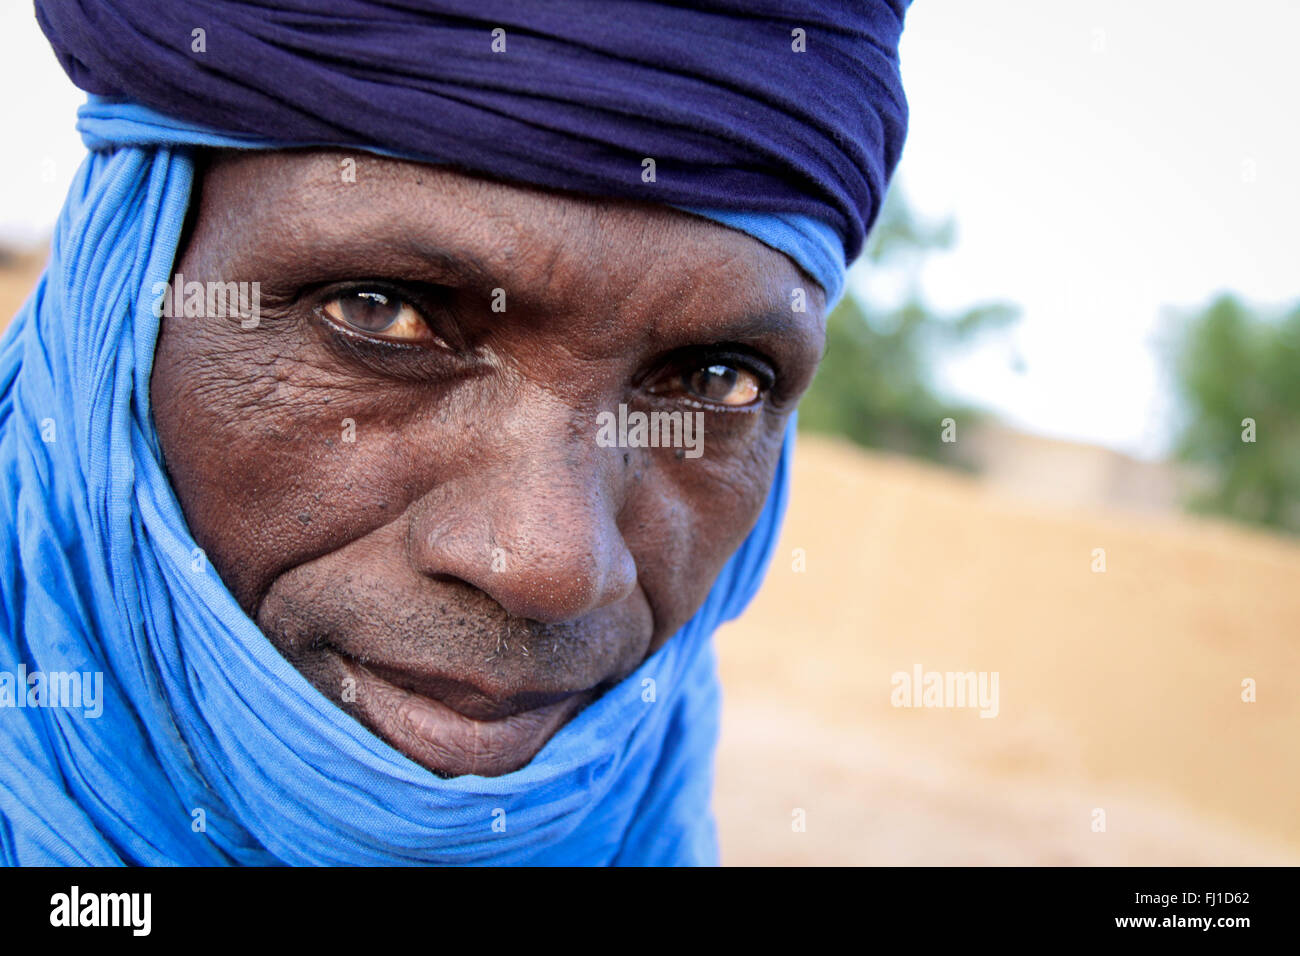 Portrait sur les yeux d'un homme du désert dans la région du Sahel, Burkina Faso Banque D'Images